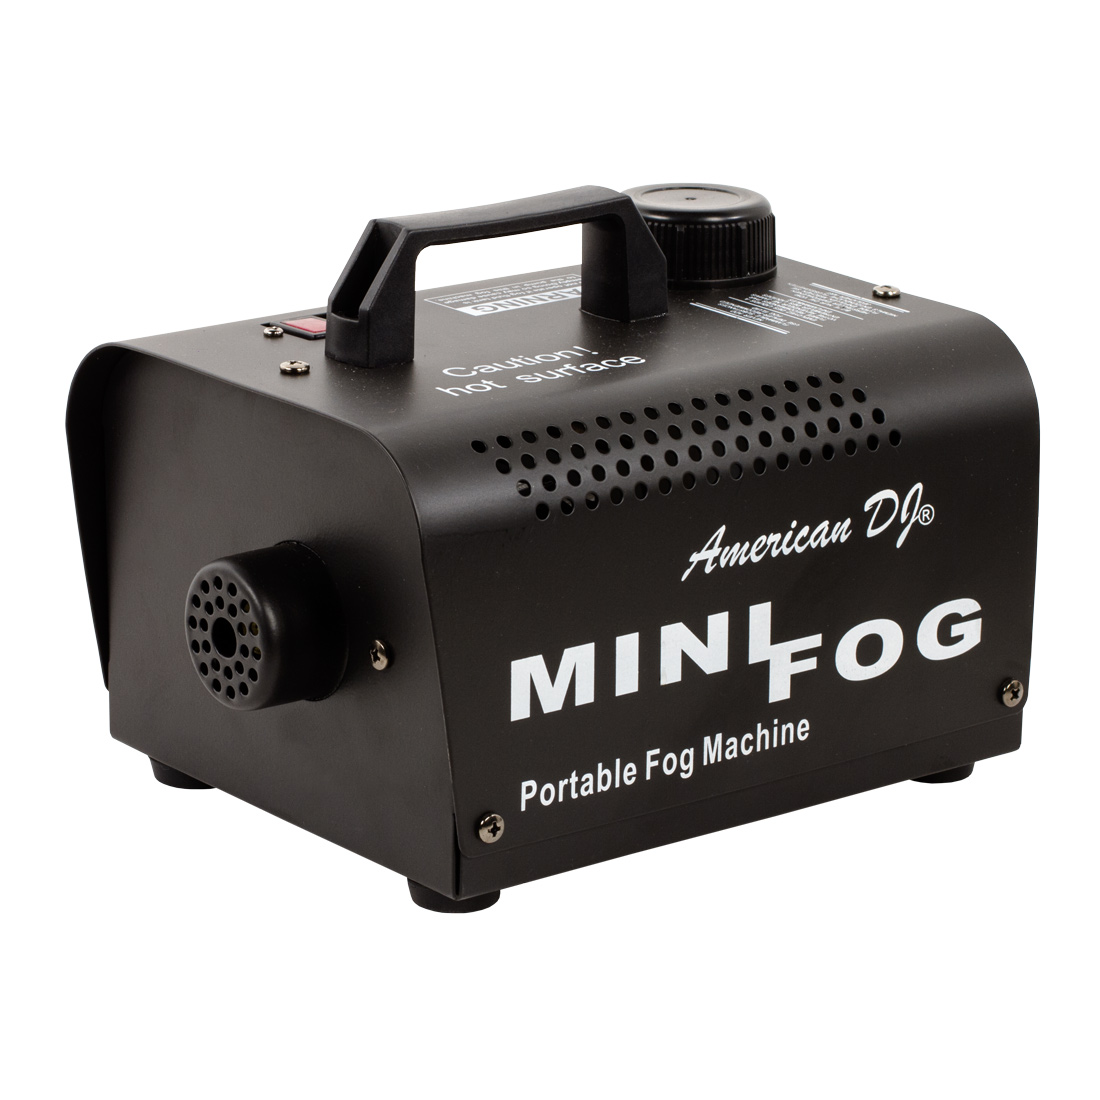 Mini Fog 400 fog machine